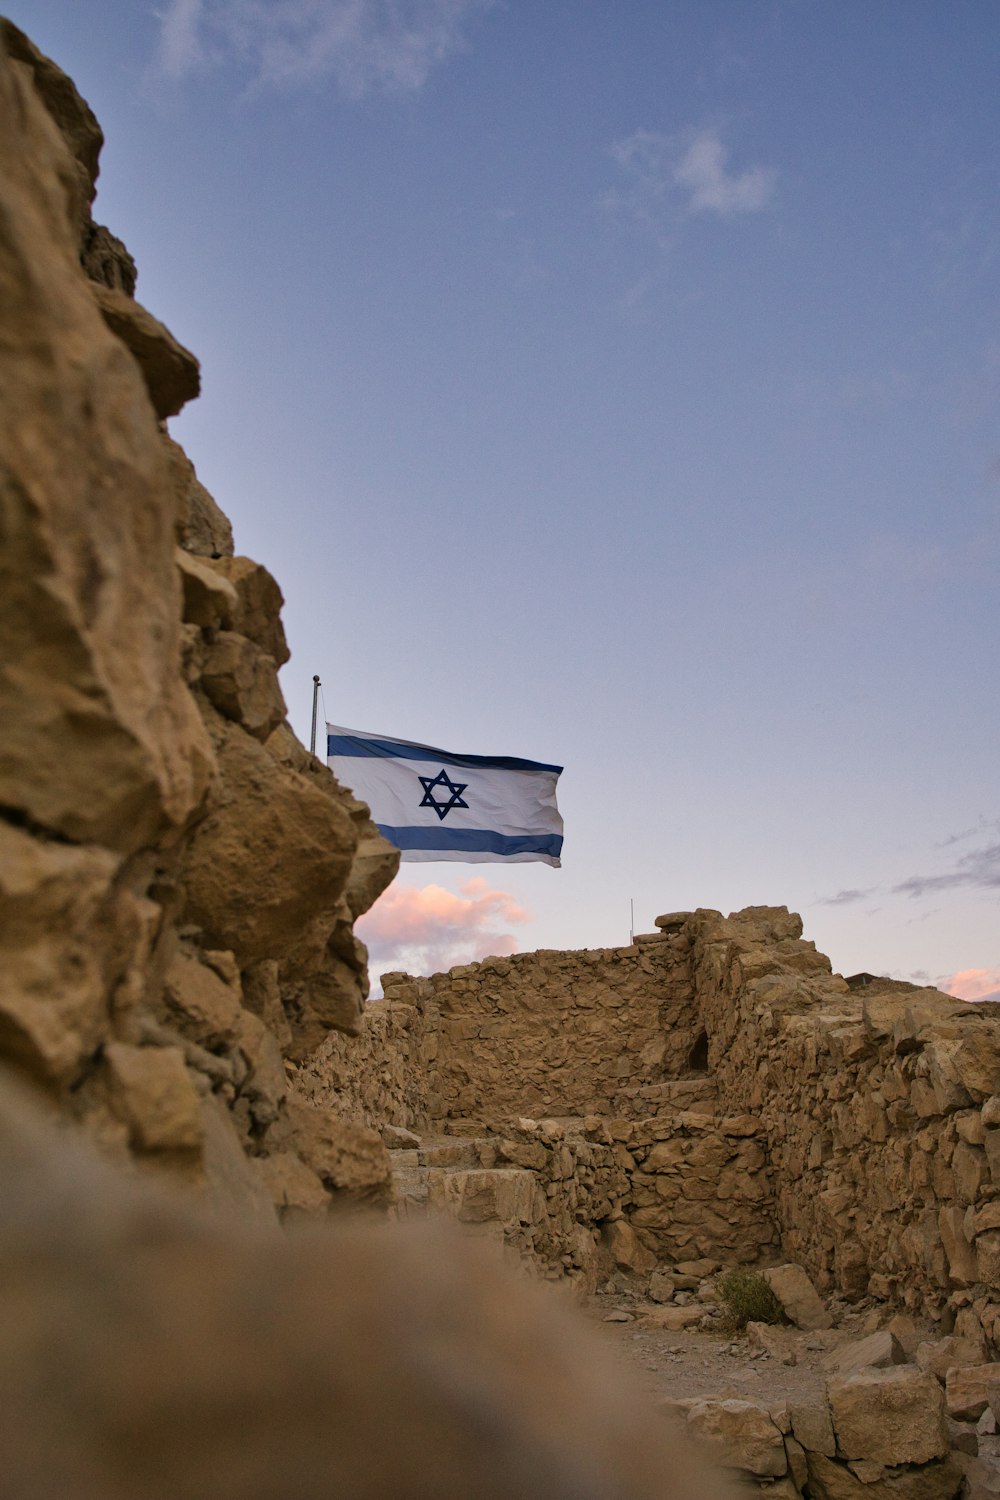 an israeli flag flying over a rocky area